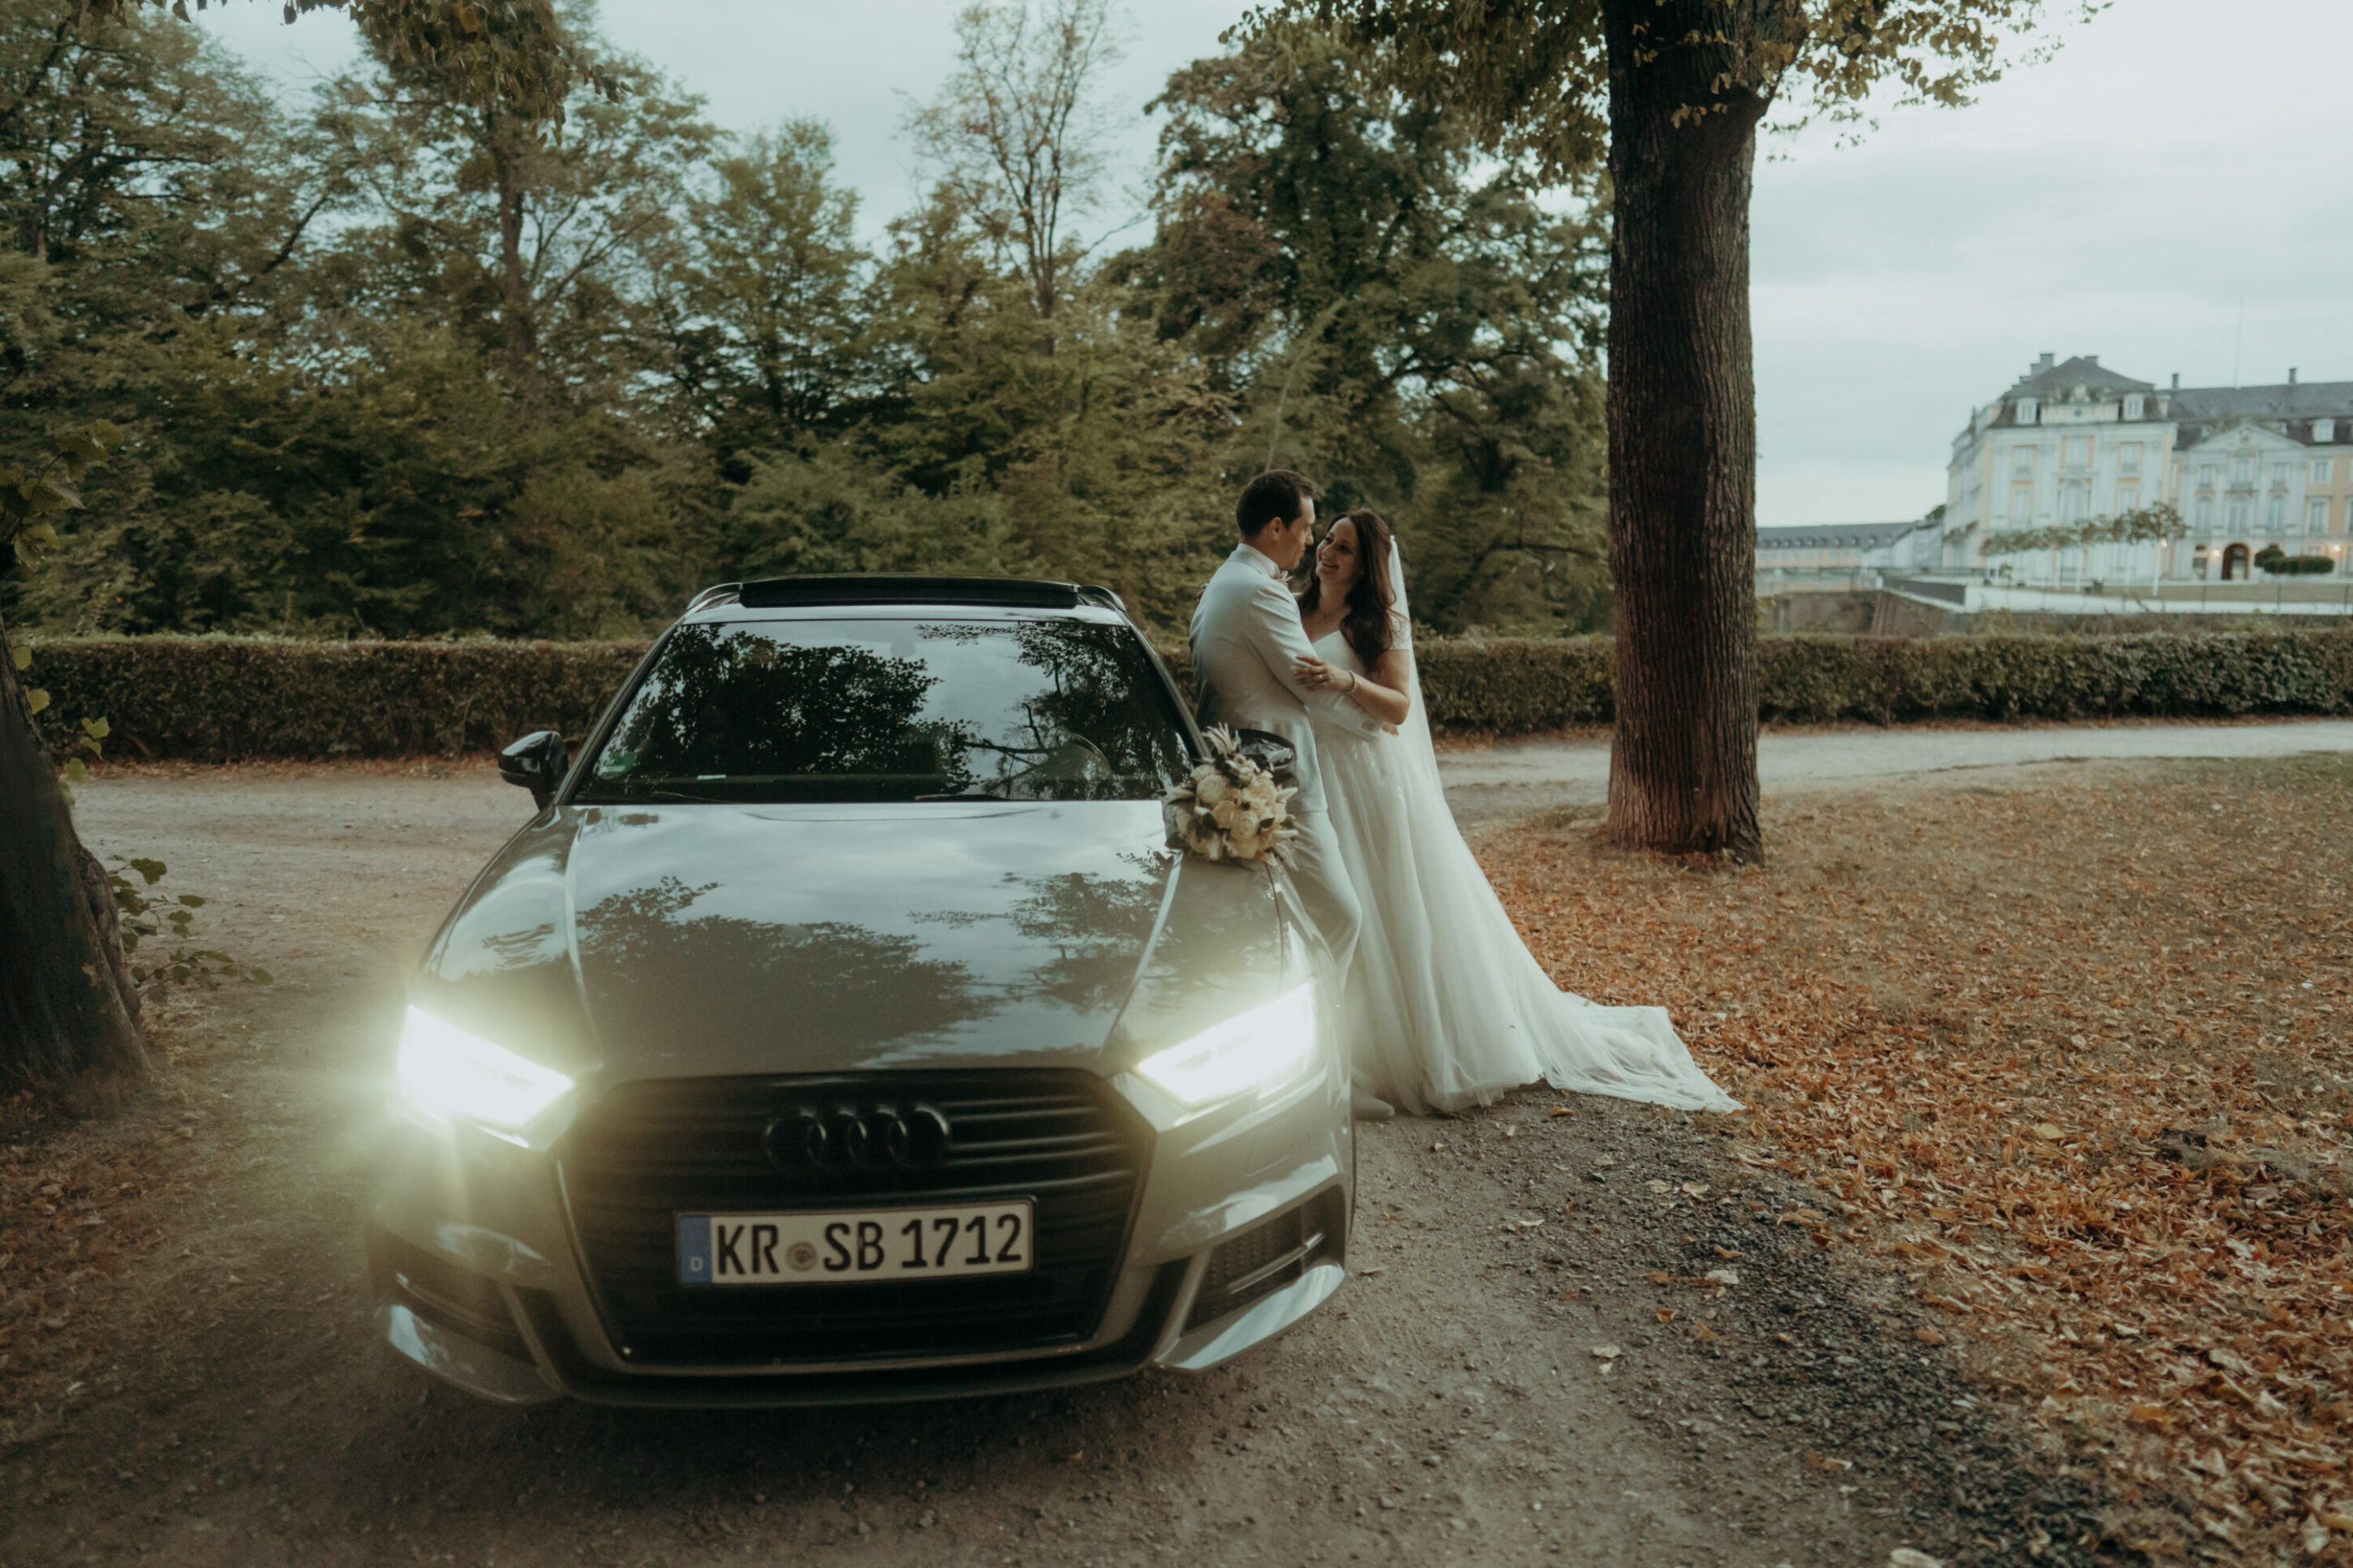 Hochzeitspaar lehnt an Audi, sich im Arm haltend, Schloss im Hintergrund, Allee